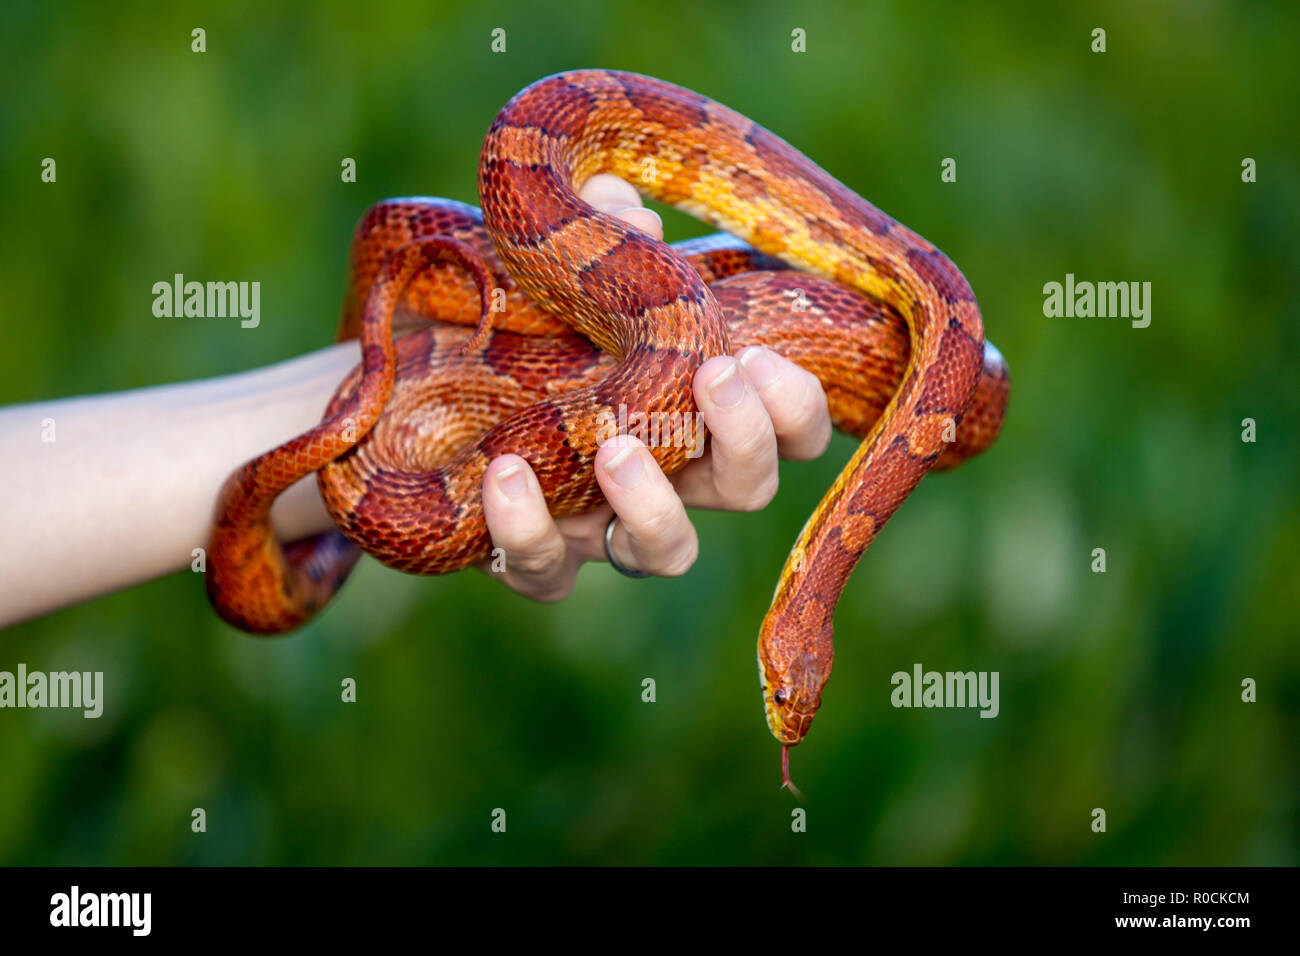 Maíz serpiente enrollada alrededor de propietarios mano contra fondo verde Foto de stock